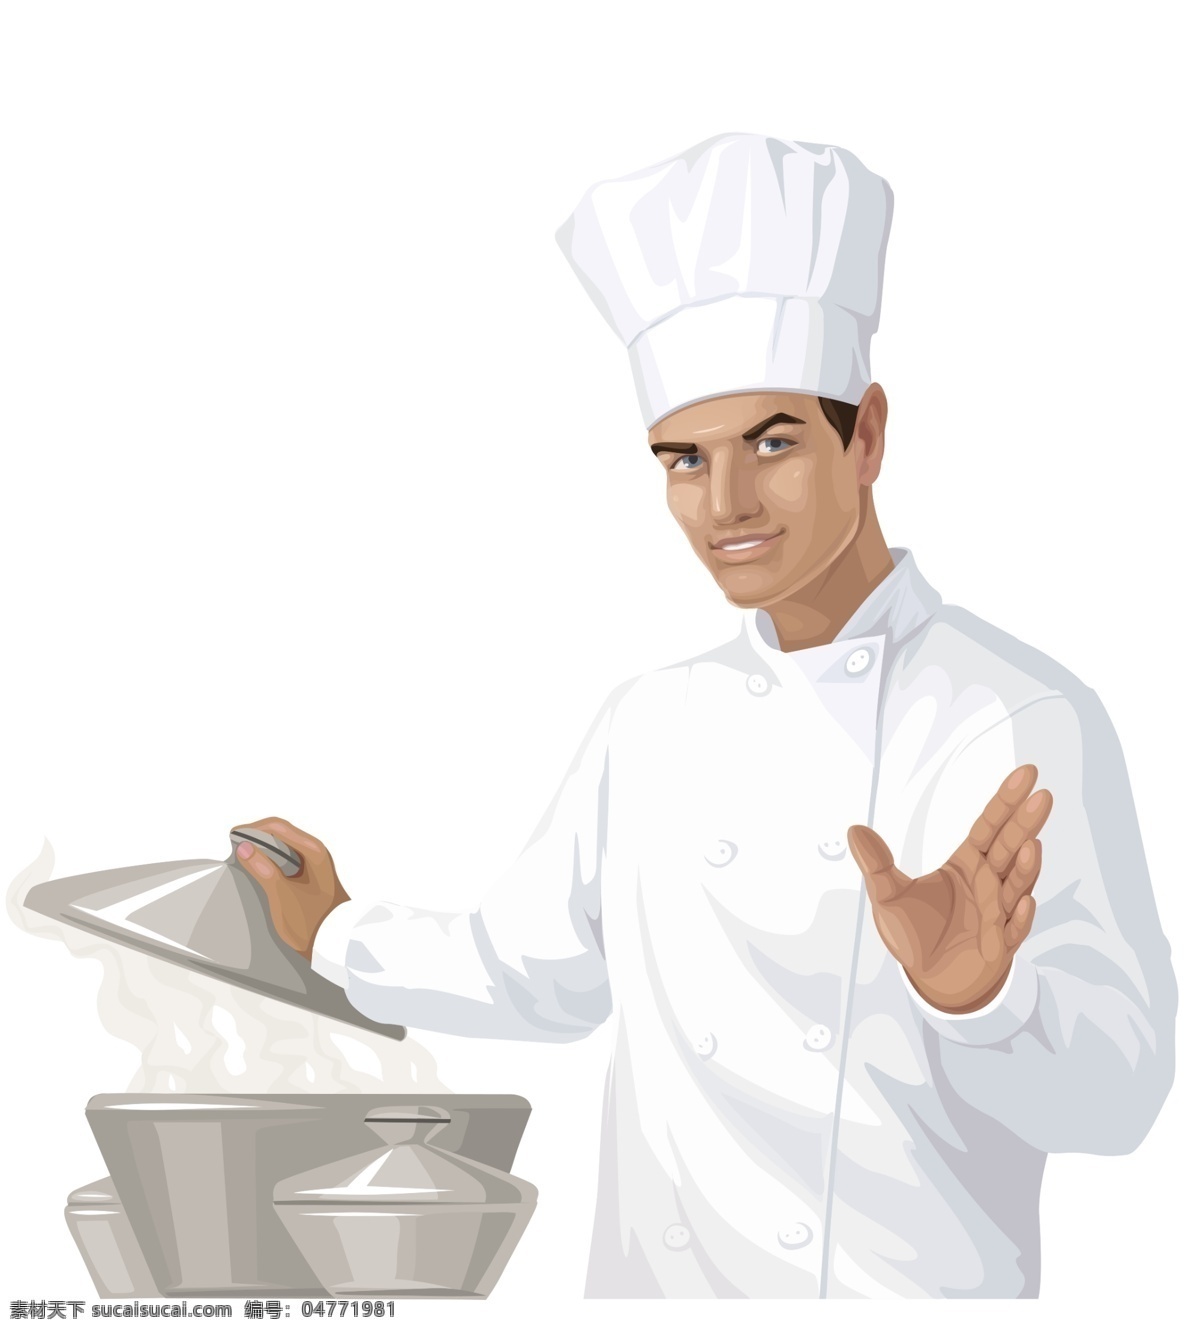 分层 厨师 卡通 源文件 厨师素材下载 厨师模板下载 白衣服厨师 厨房元素 后厨人员 装饰素材 室内设计